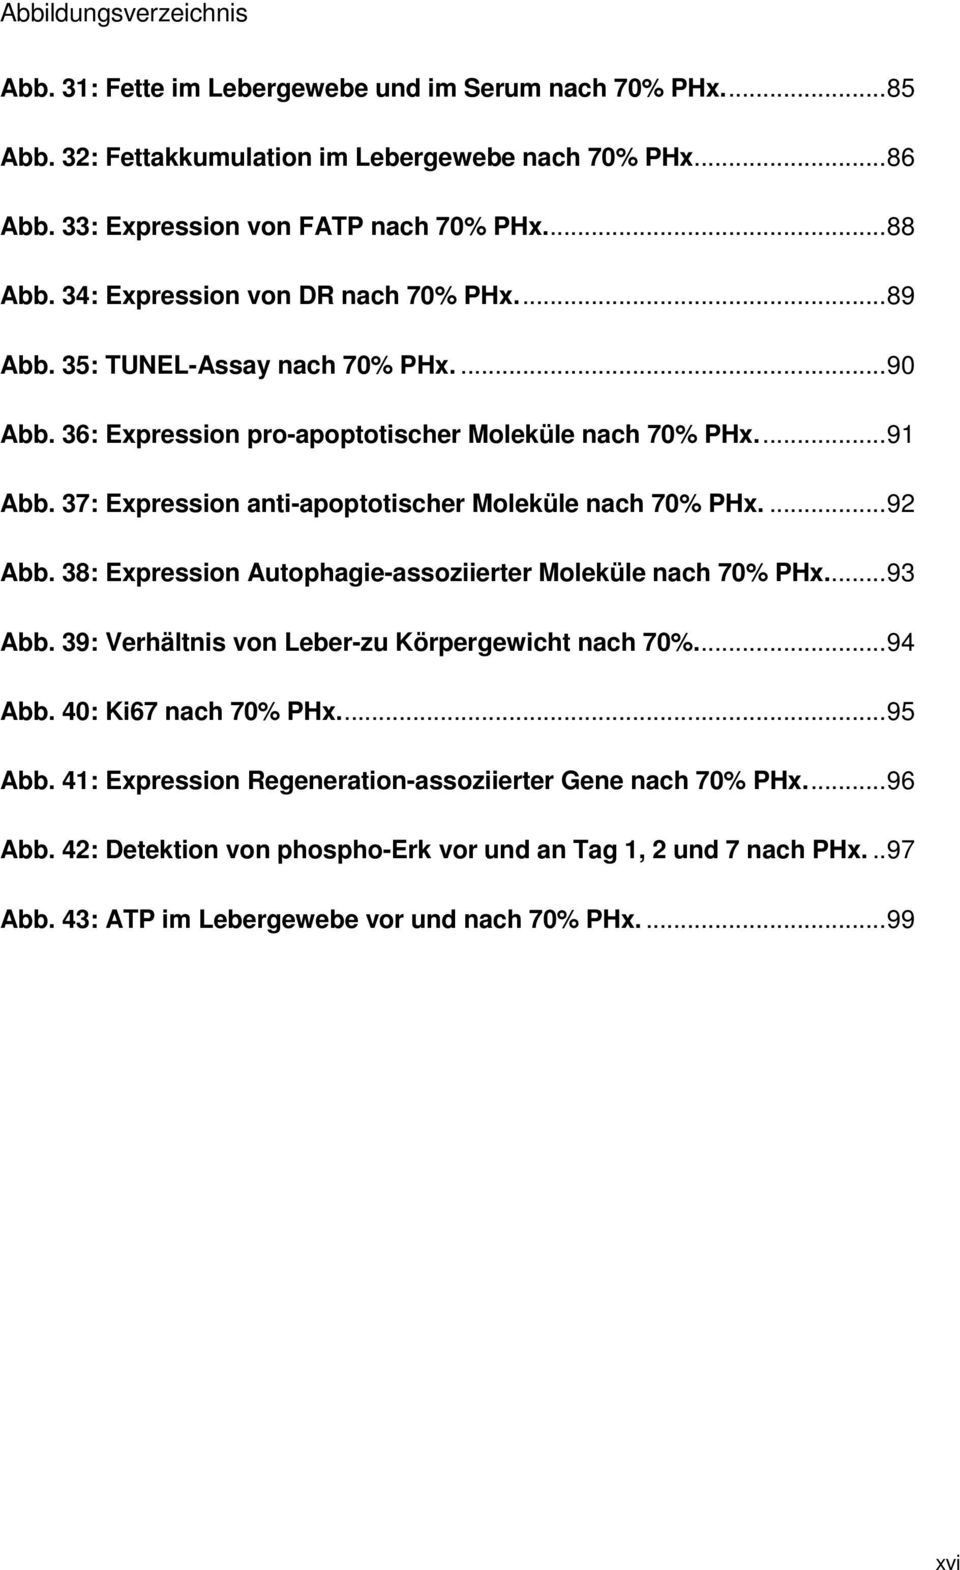 37: Expression anti-apoptotischer Moleküle nach 70% PHx.... 92 Abb. 38: Expression Autophagie-assoziierter Moleküle nach 70% PHx.... 93 Abb. 39: Verhältnis von Leber-zu Körpergewicht nach 70%.